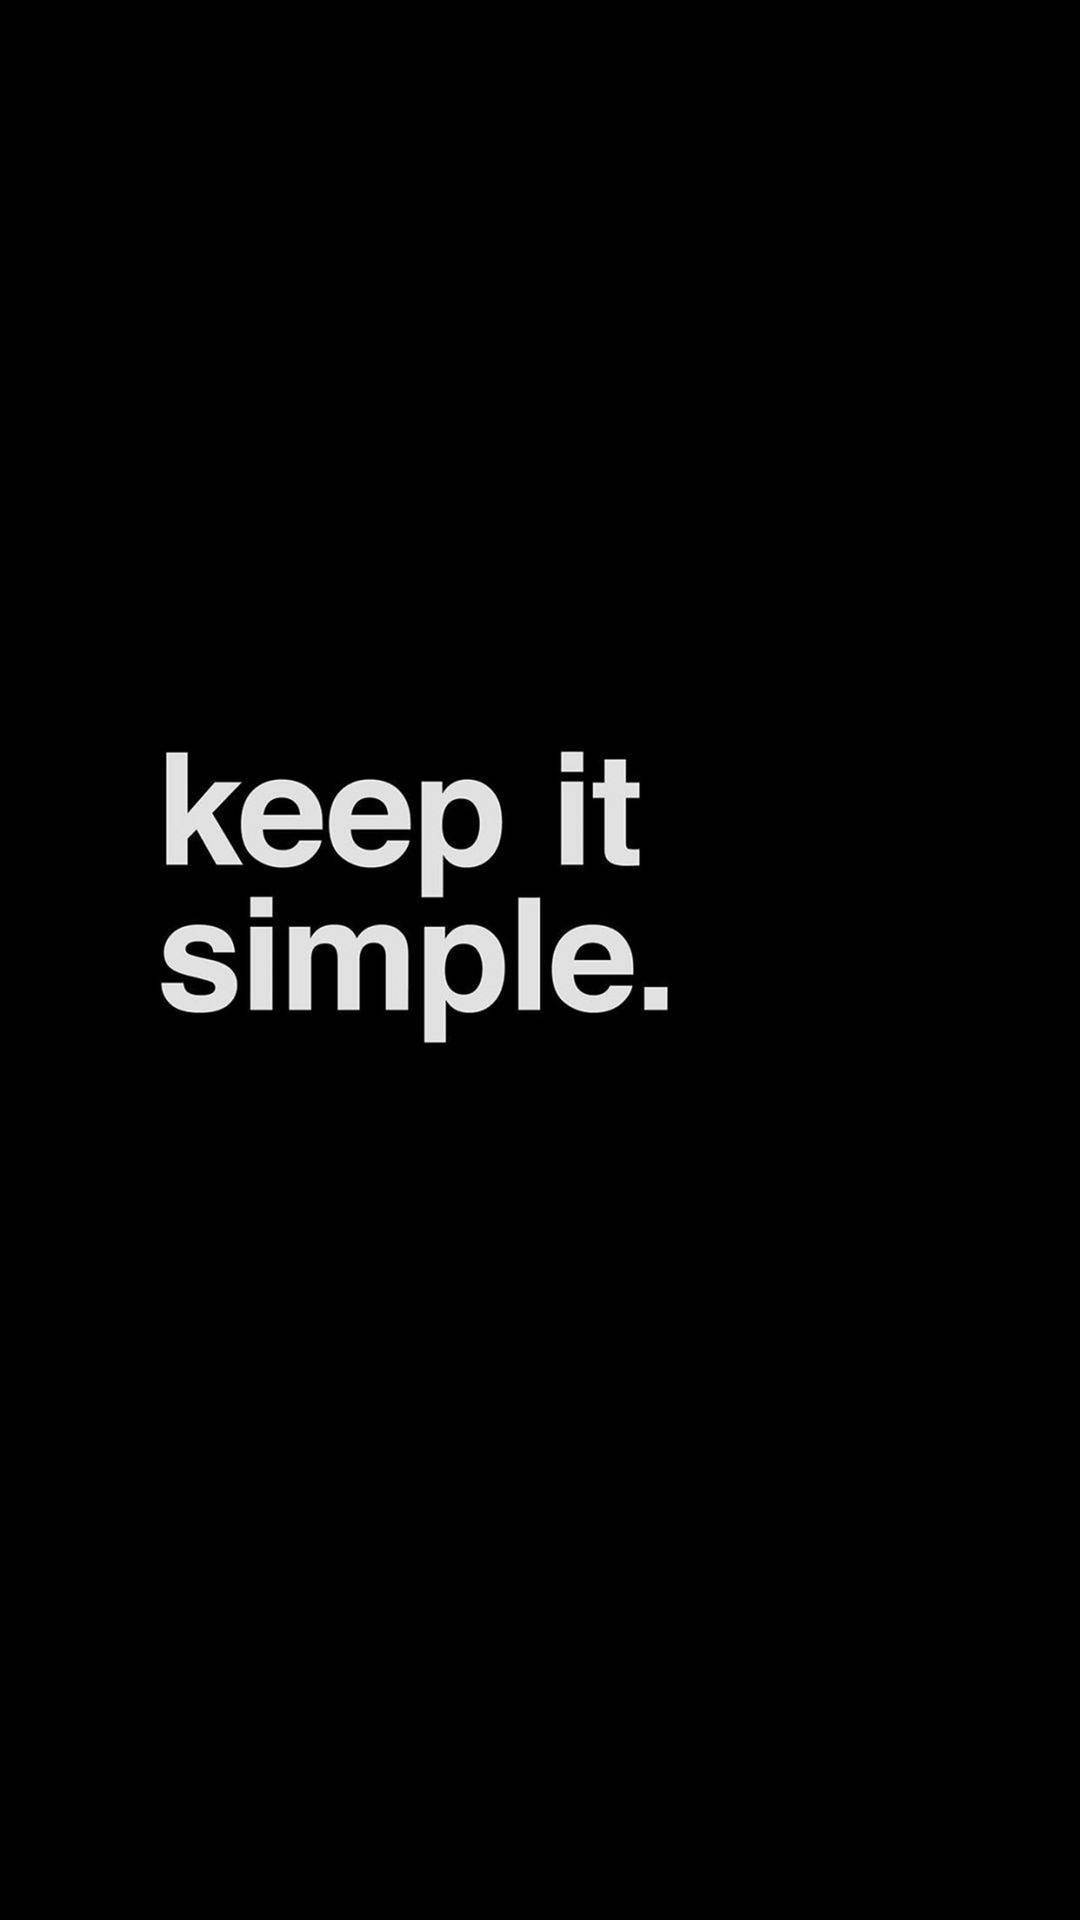 Keep It Simple Minimalist Black Phone